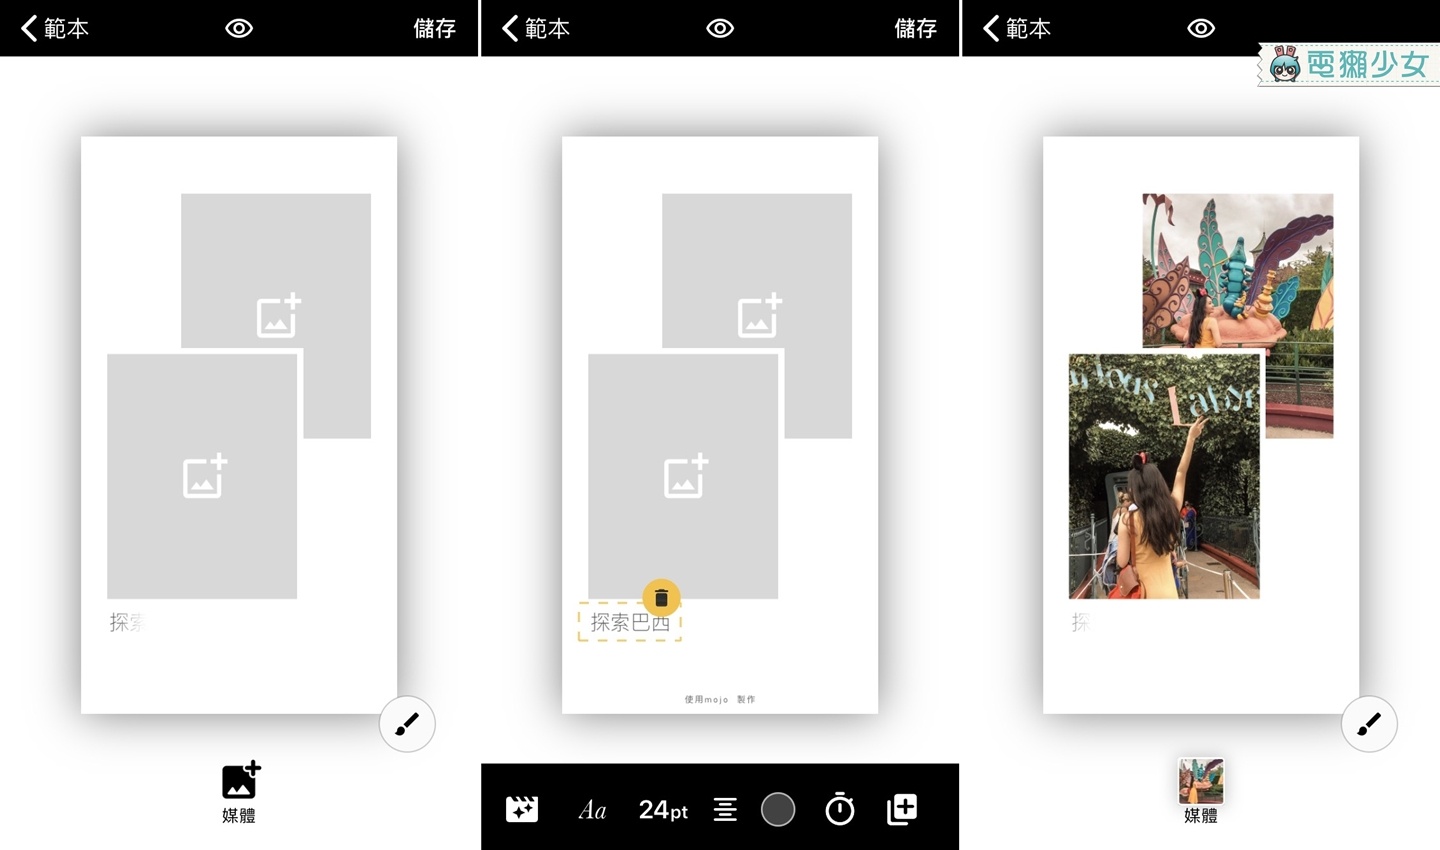 讓你的 Instagram 限時動態質感再升級！用免費『 mojo 』做動態照片拼圖影片 Android / iOS